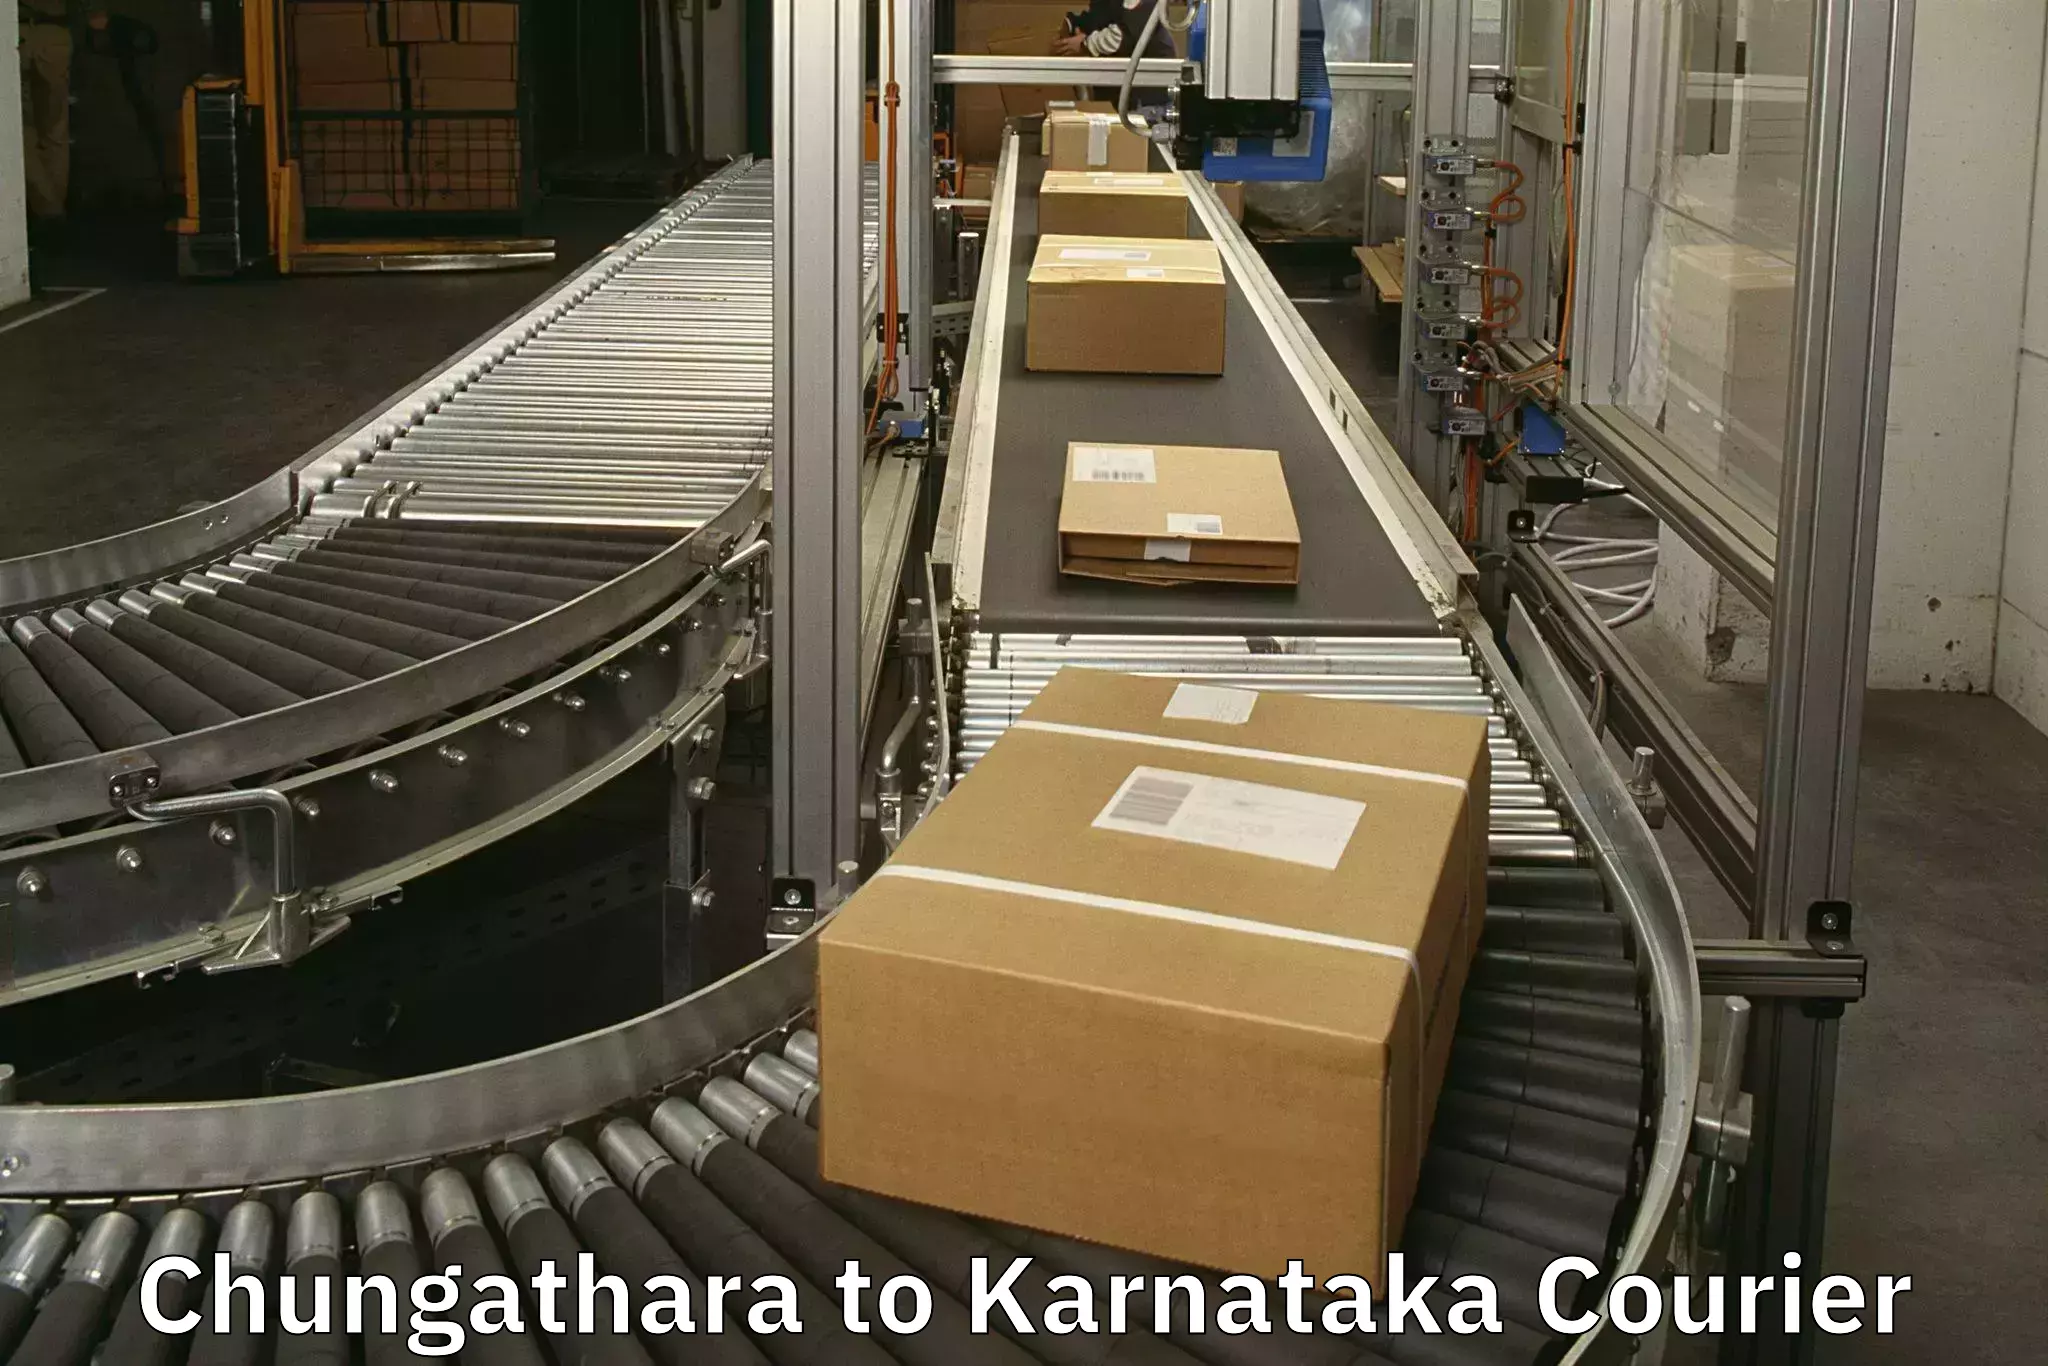 Baggage shipping experience Chungathara to Karnataka